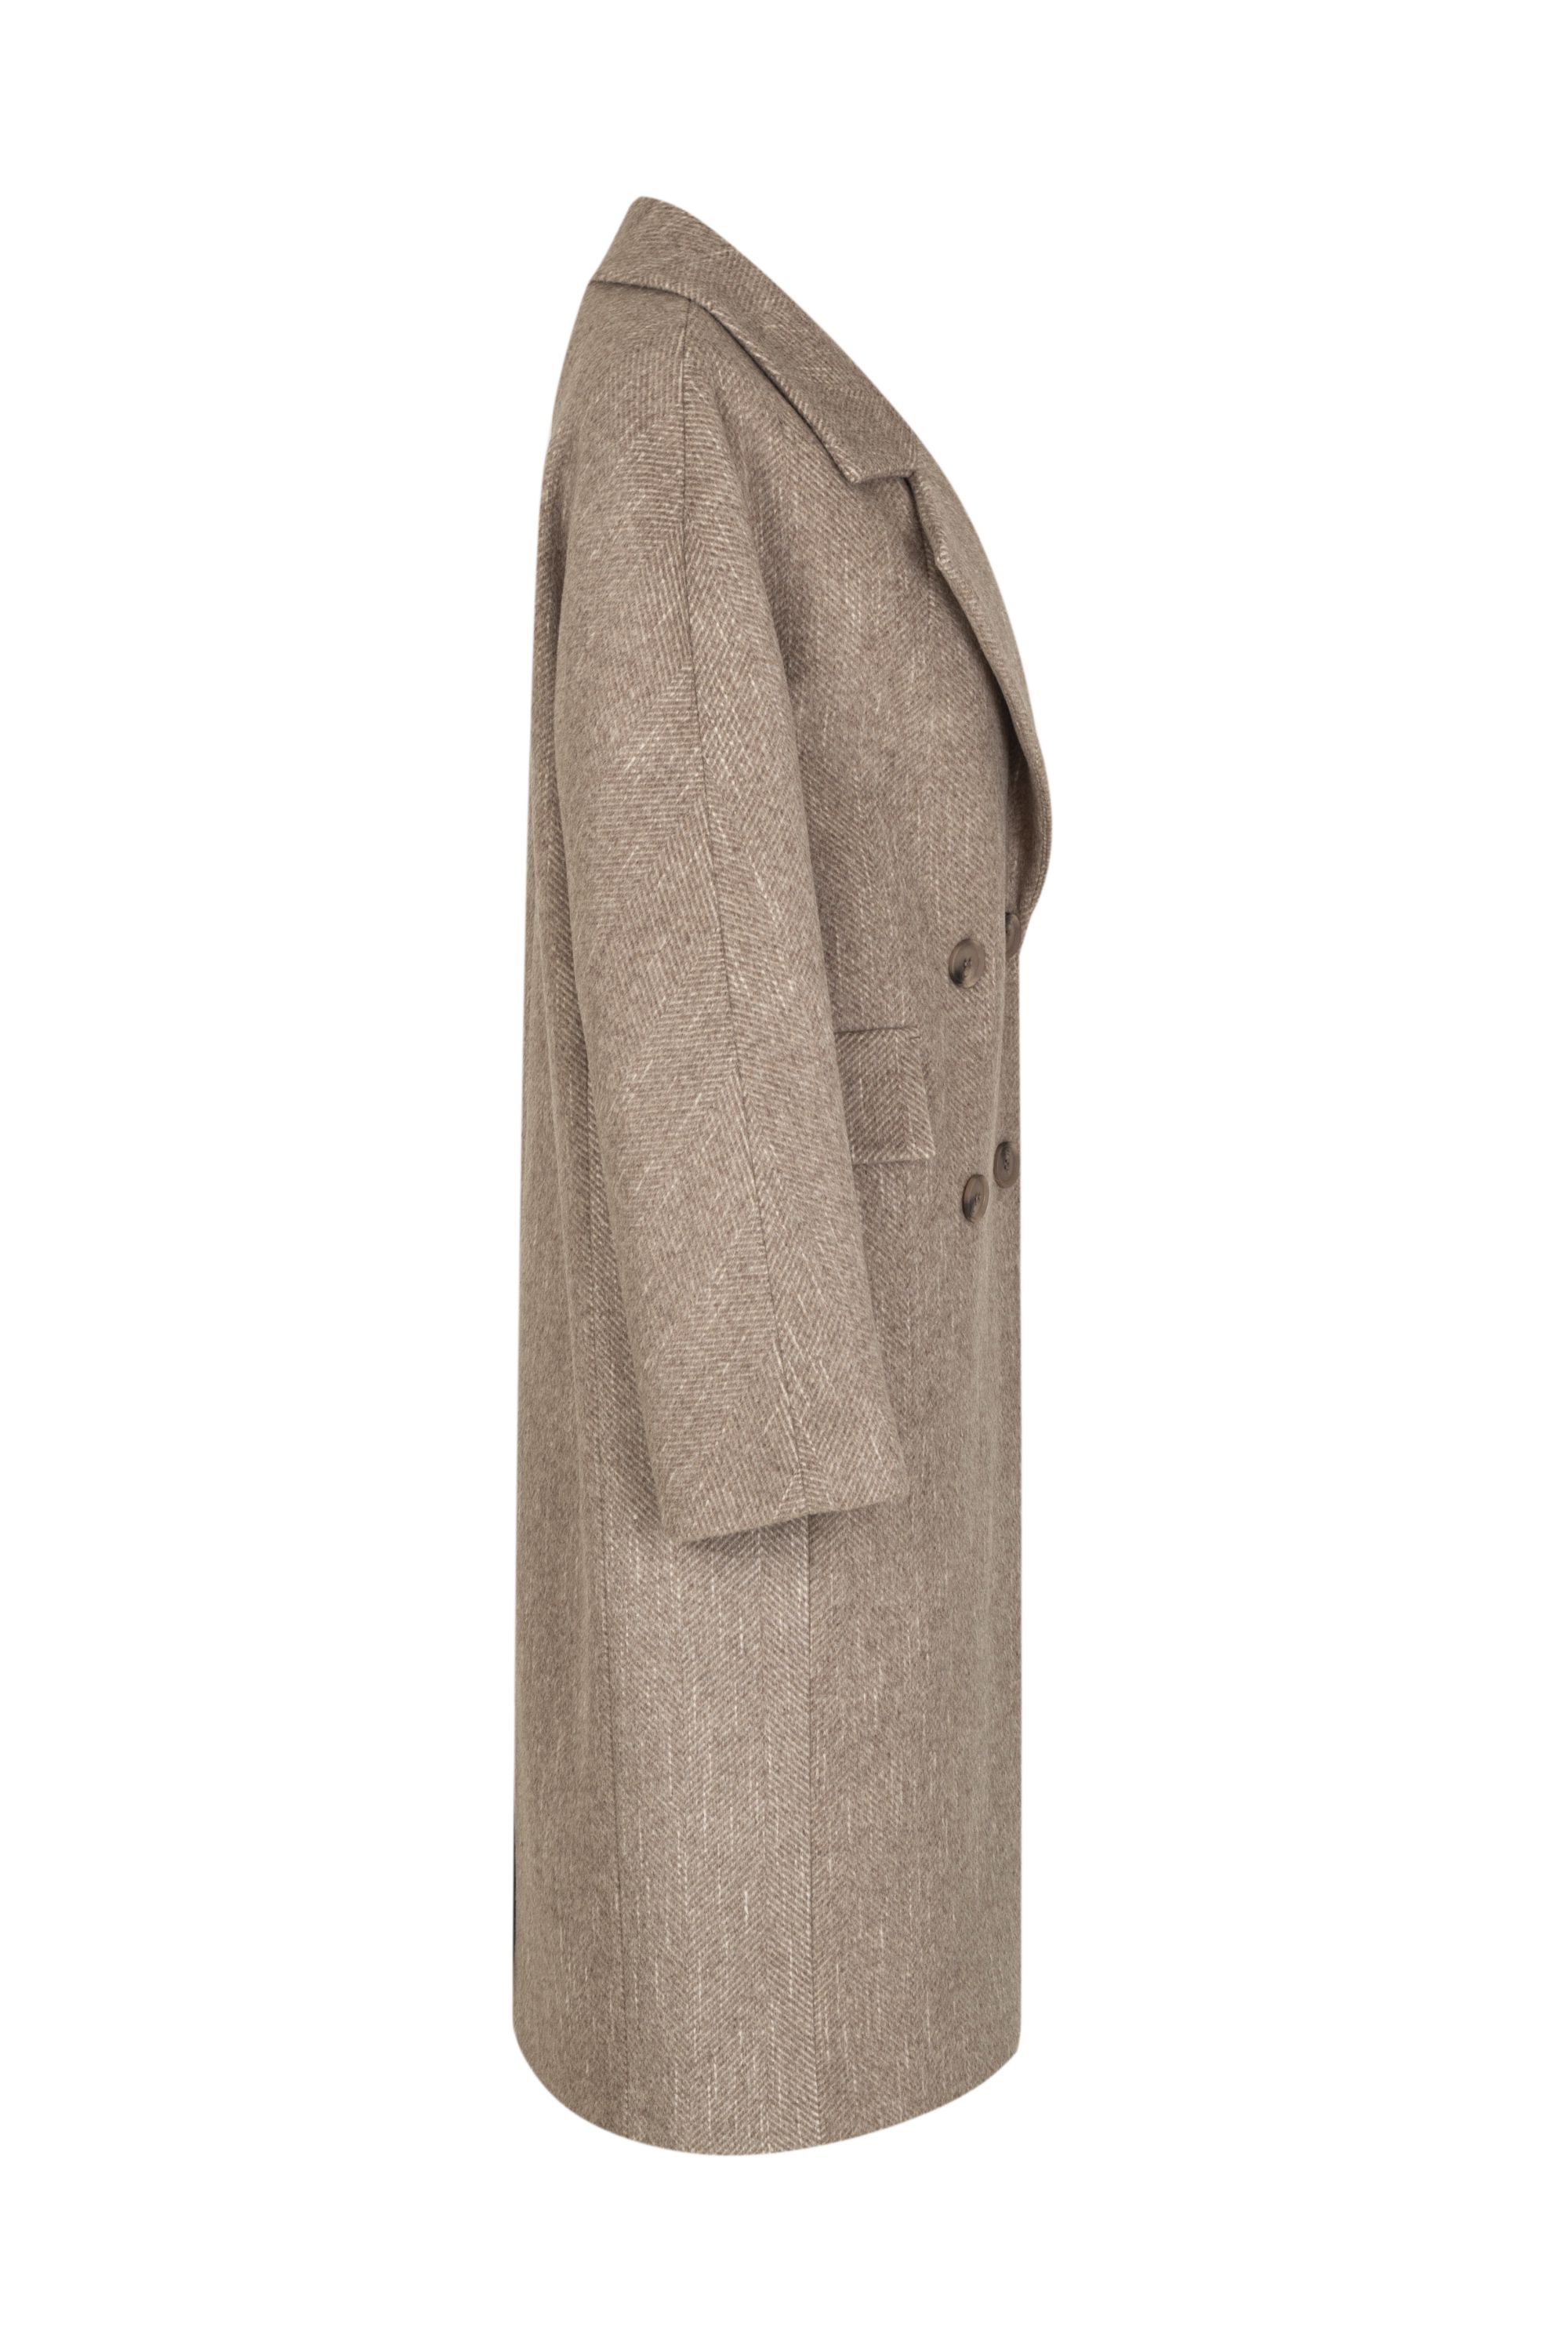 Пальто женское демисезонное 1-12200-1. Фото 2.